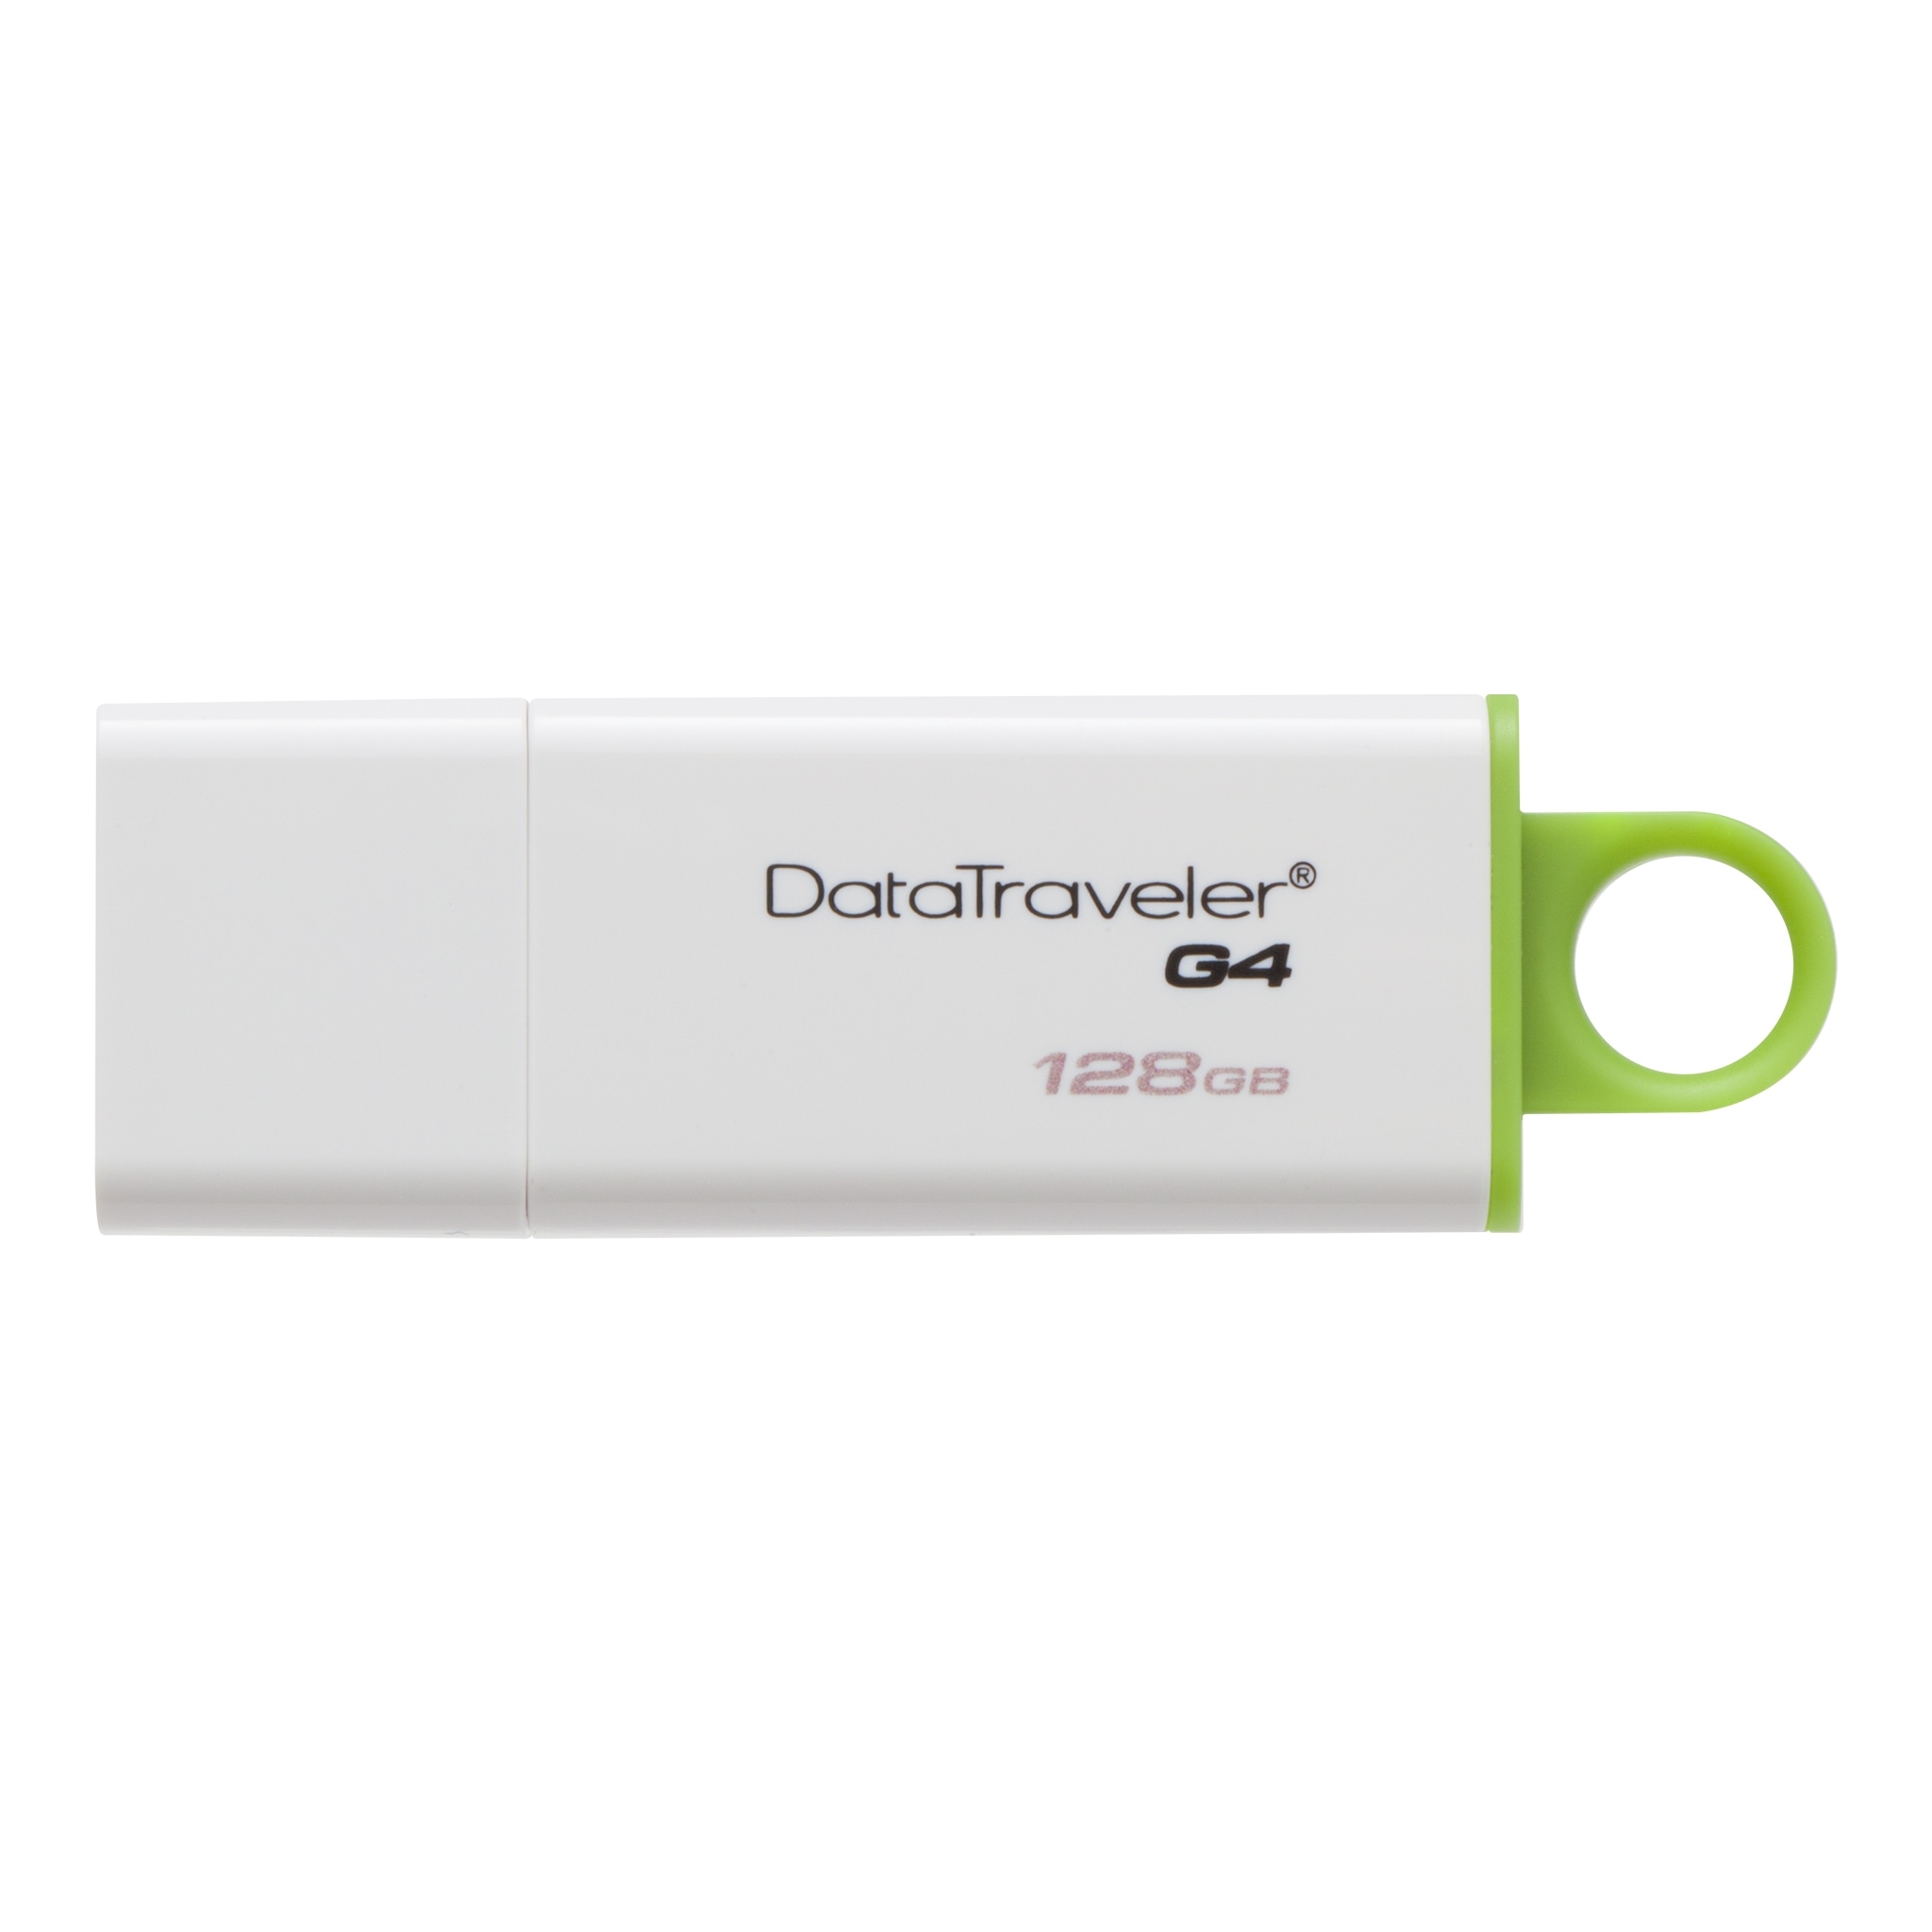 Data Traveler G4 USB 3.0 128GB Kingston DTIG4/128GB image